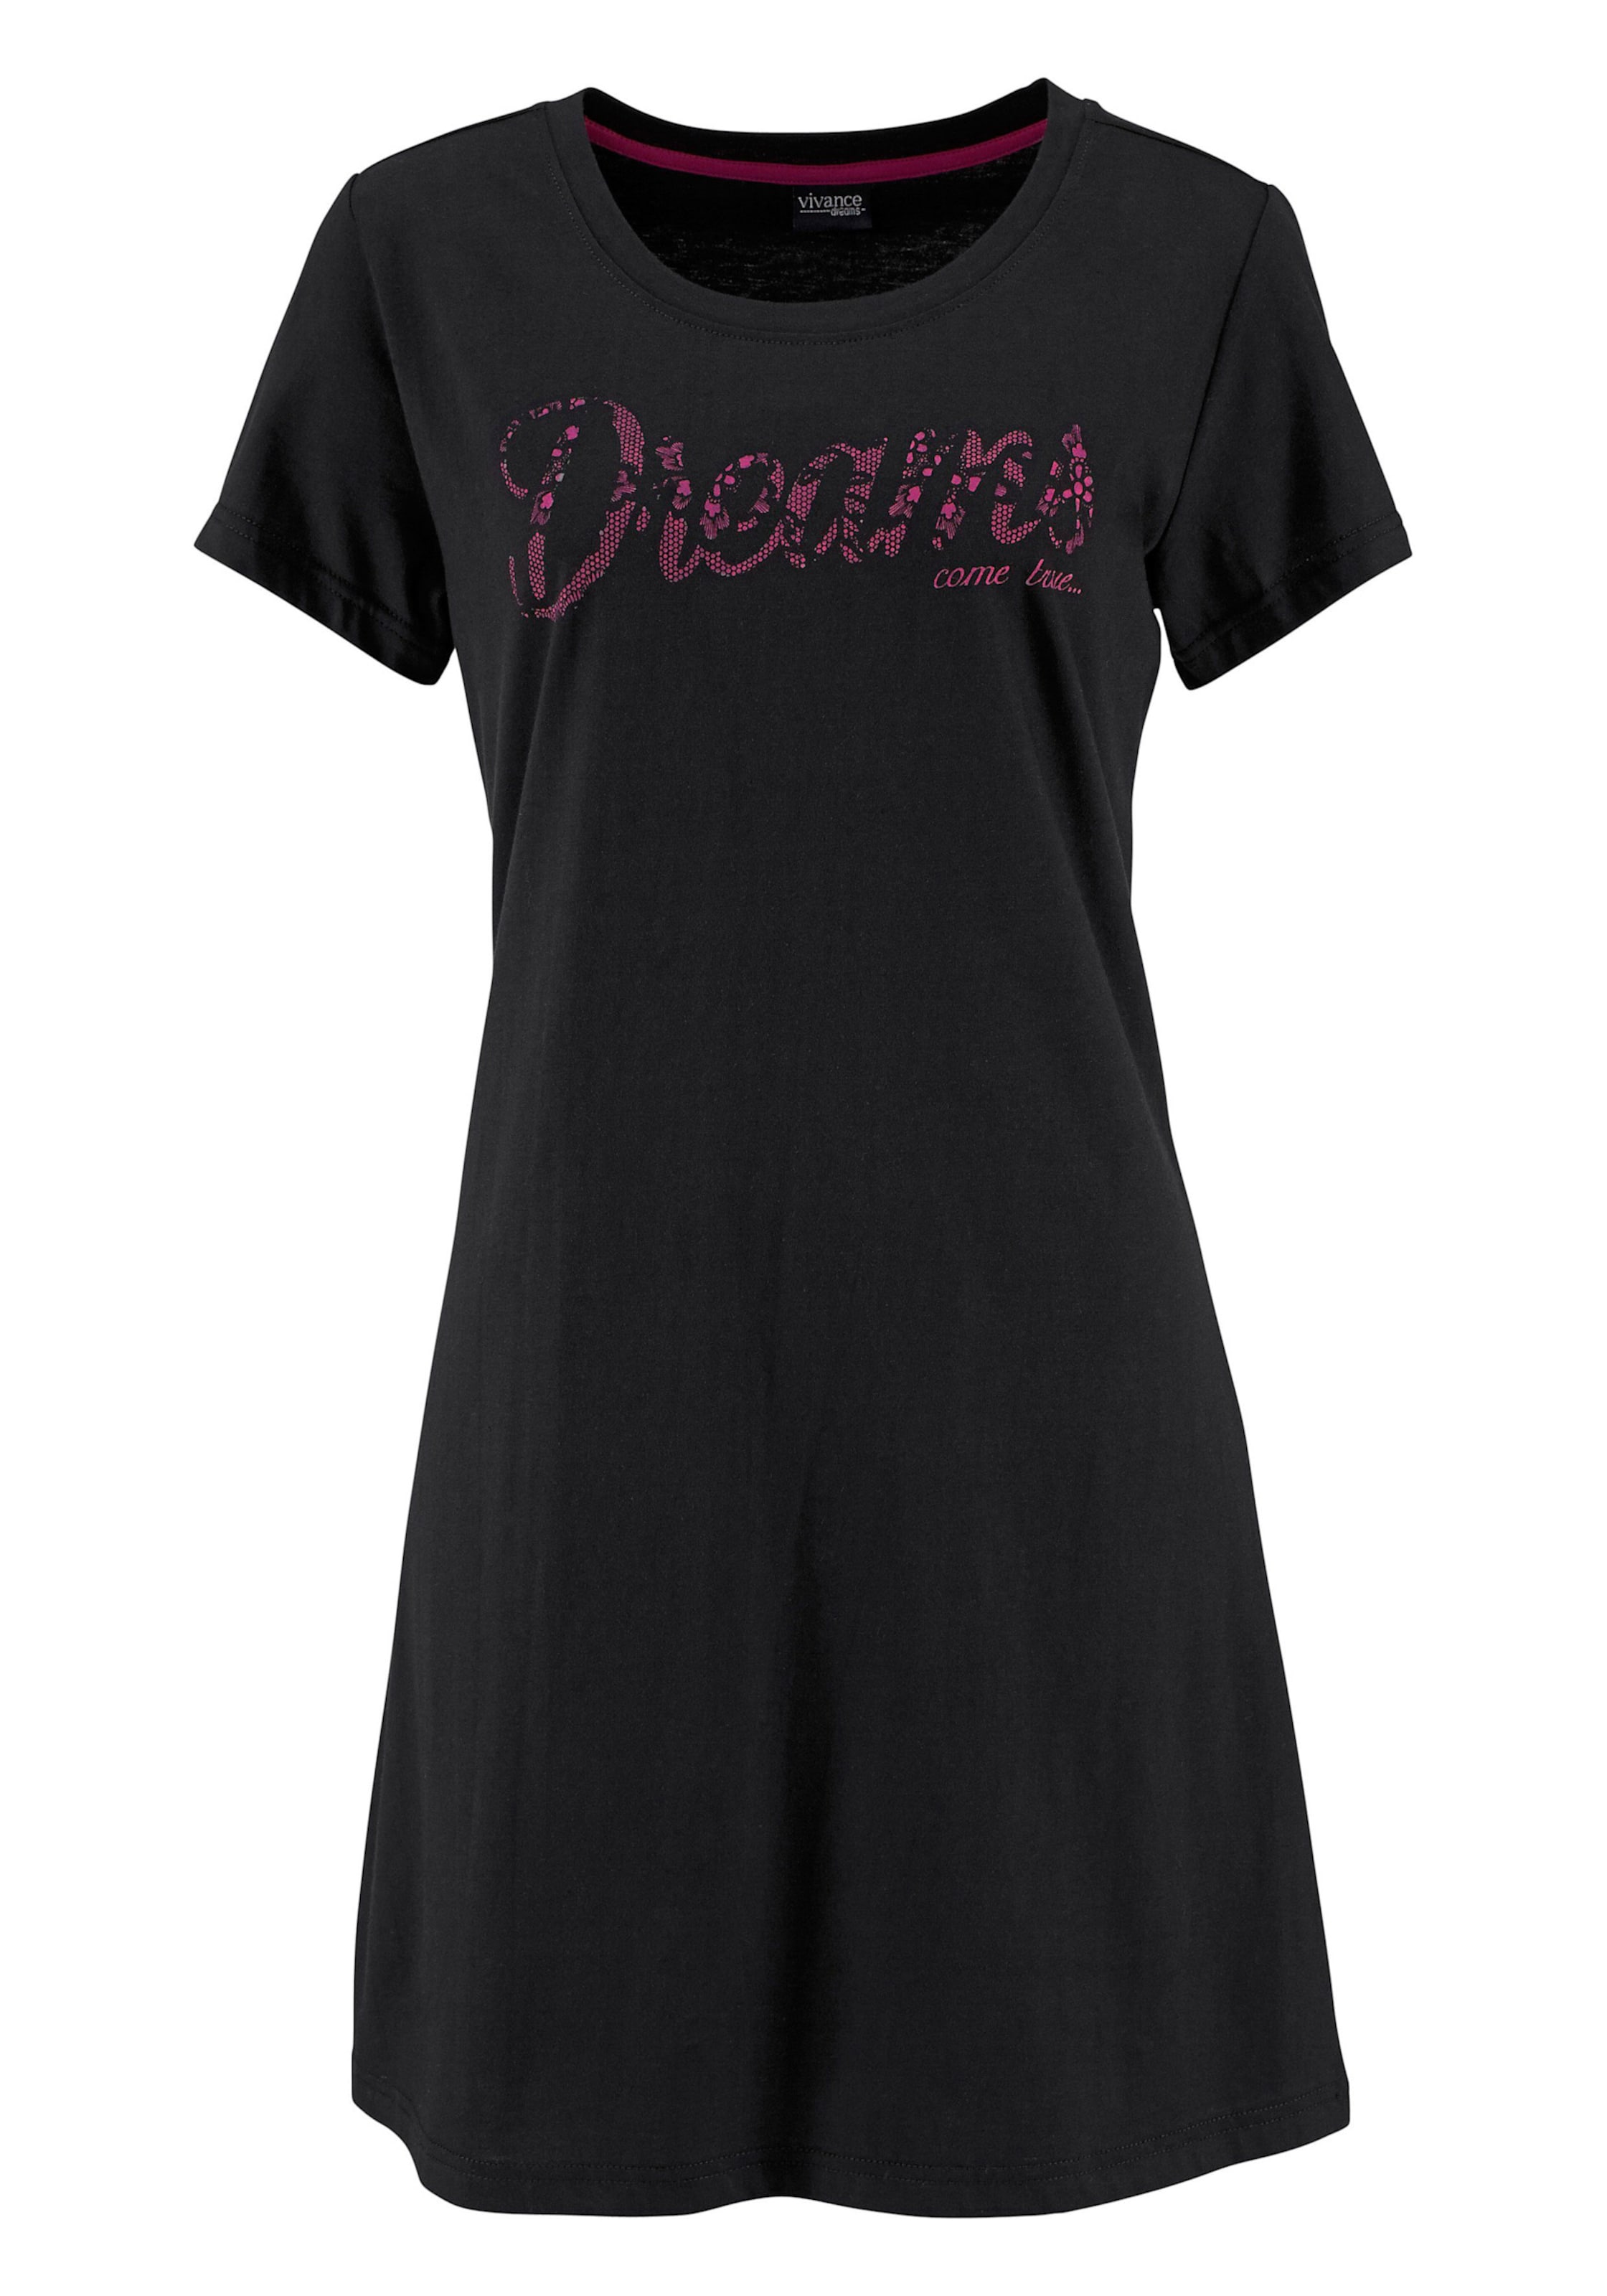 Disc Spitze günstig Kaufen-Sleepshirt in pink, schwarz von Vivance Dreams. Sleepshirt in pink, schwarz von Vivance Dreams <![CDATA[Modischer Kurz-Style mit Rundhalsausschnitt, kurzen Ärmeln und Frontdruck in Spitzen-Optik. Single-Jersey aus 100% Baumwolle.]]>. 